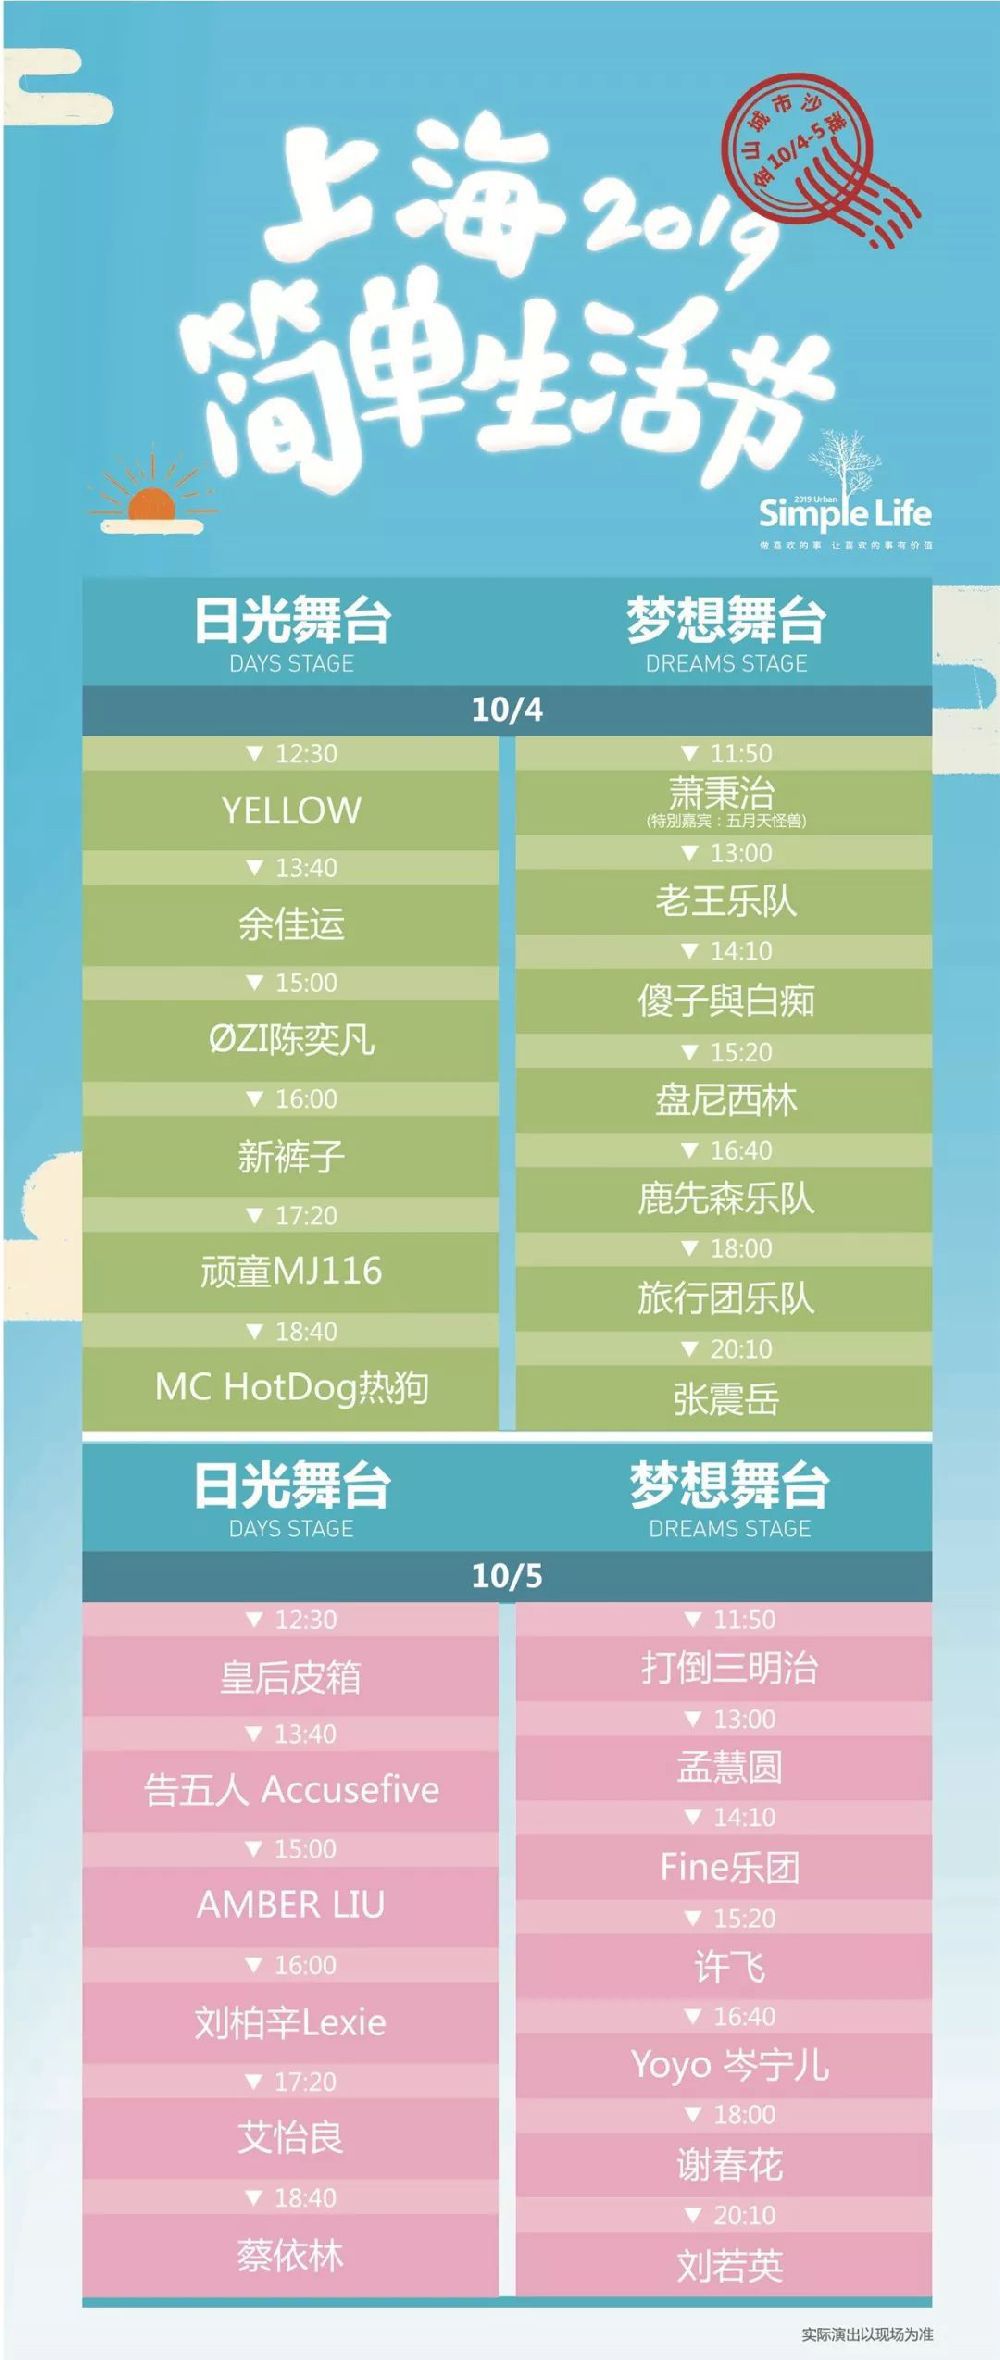 2019上海简单生活节时间+地点+门票